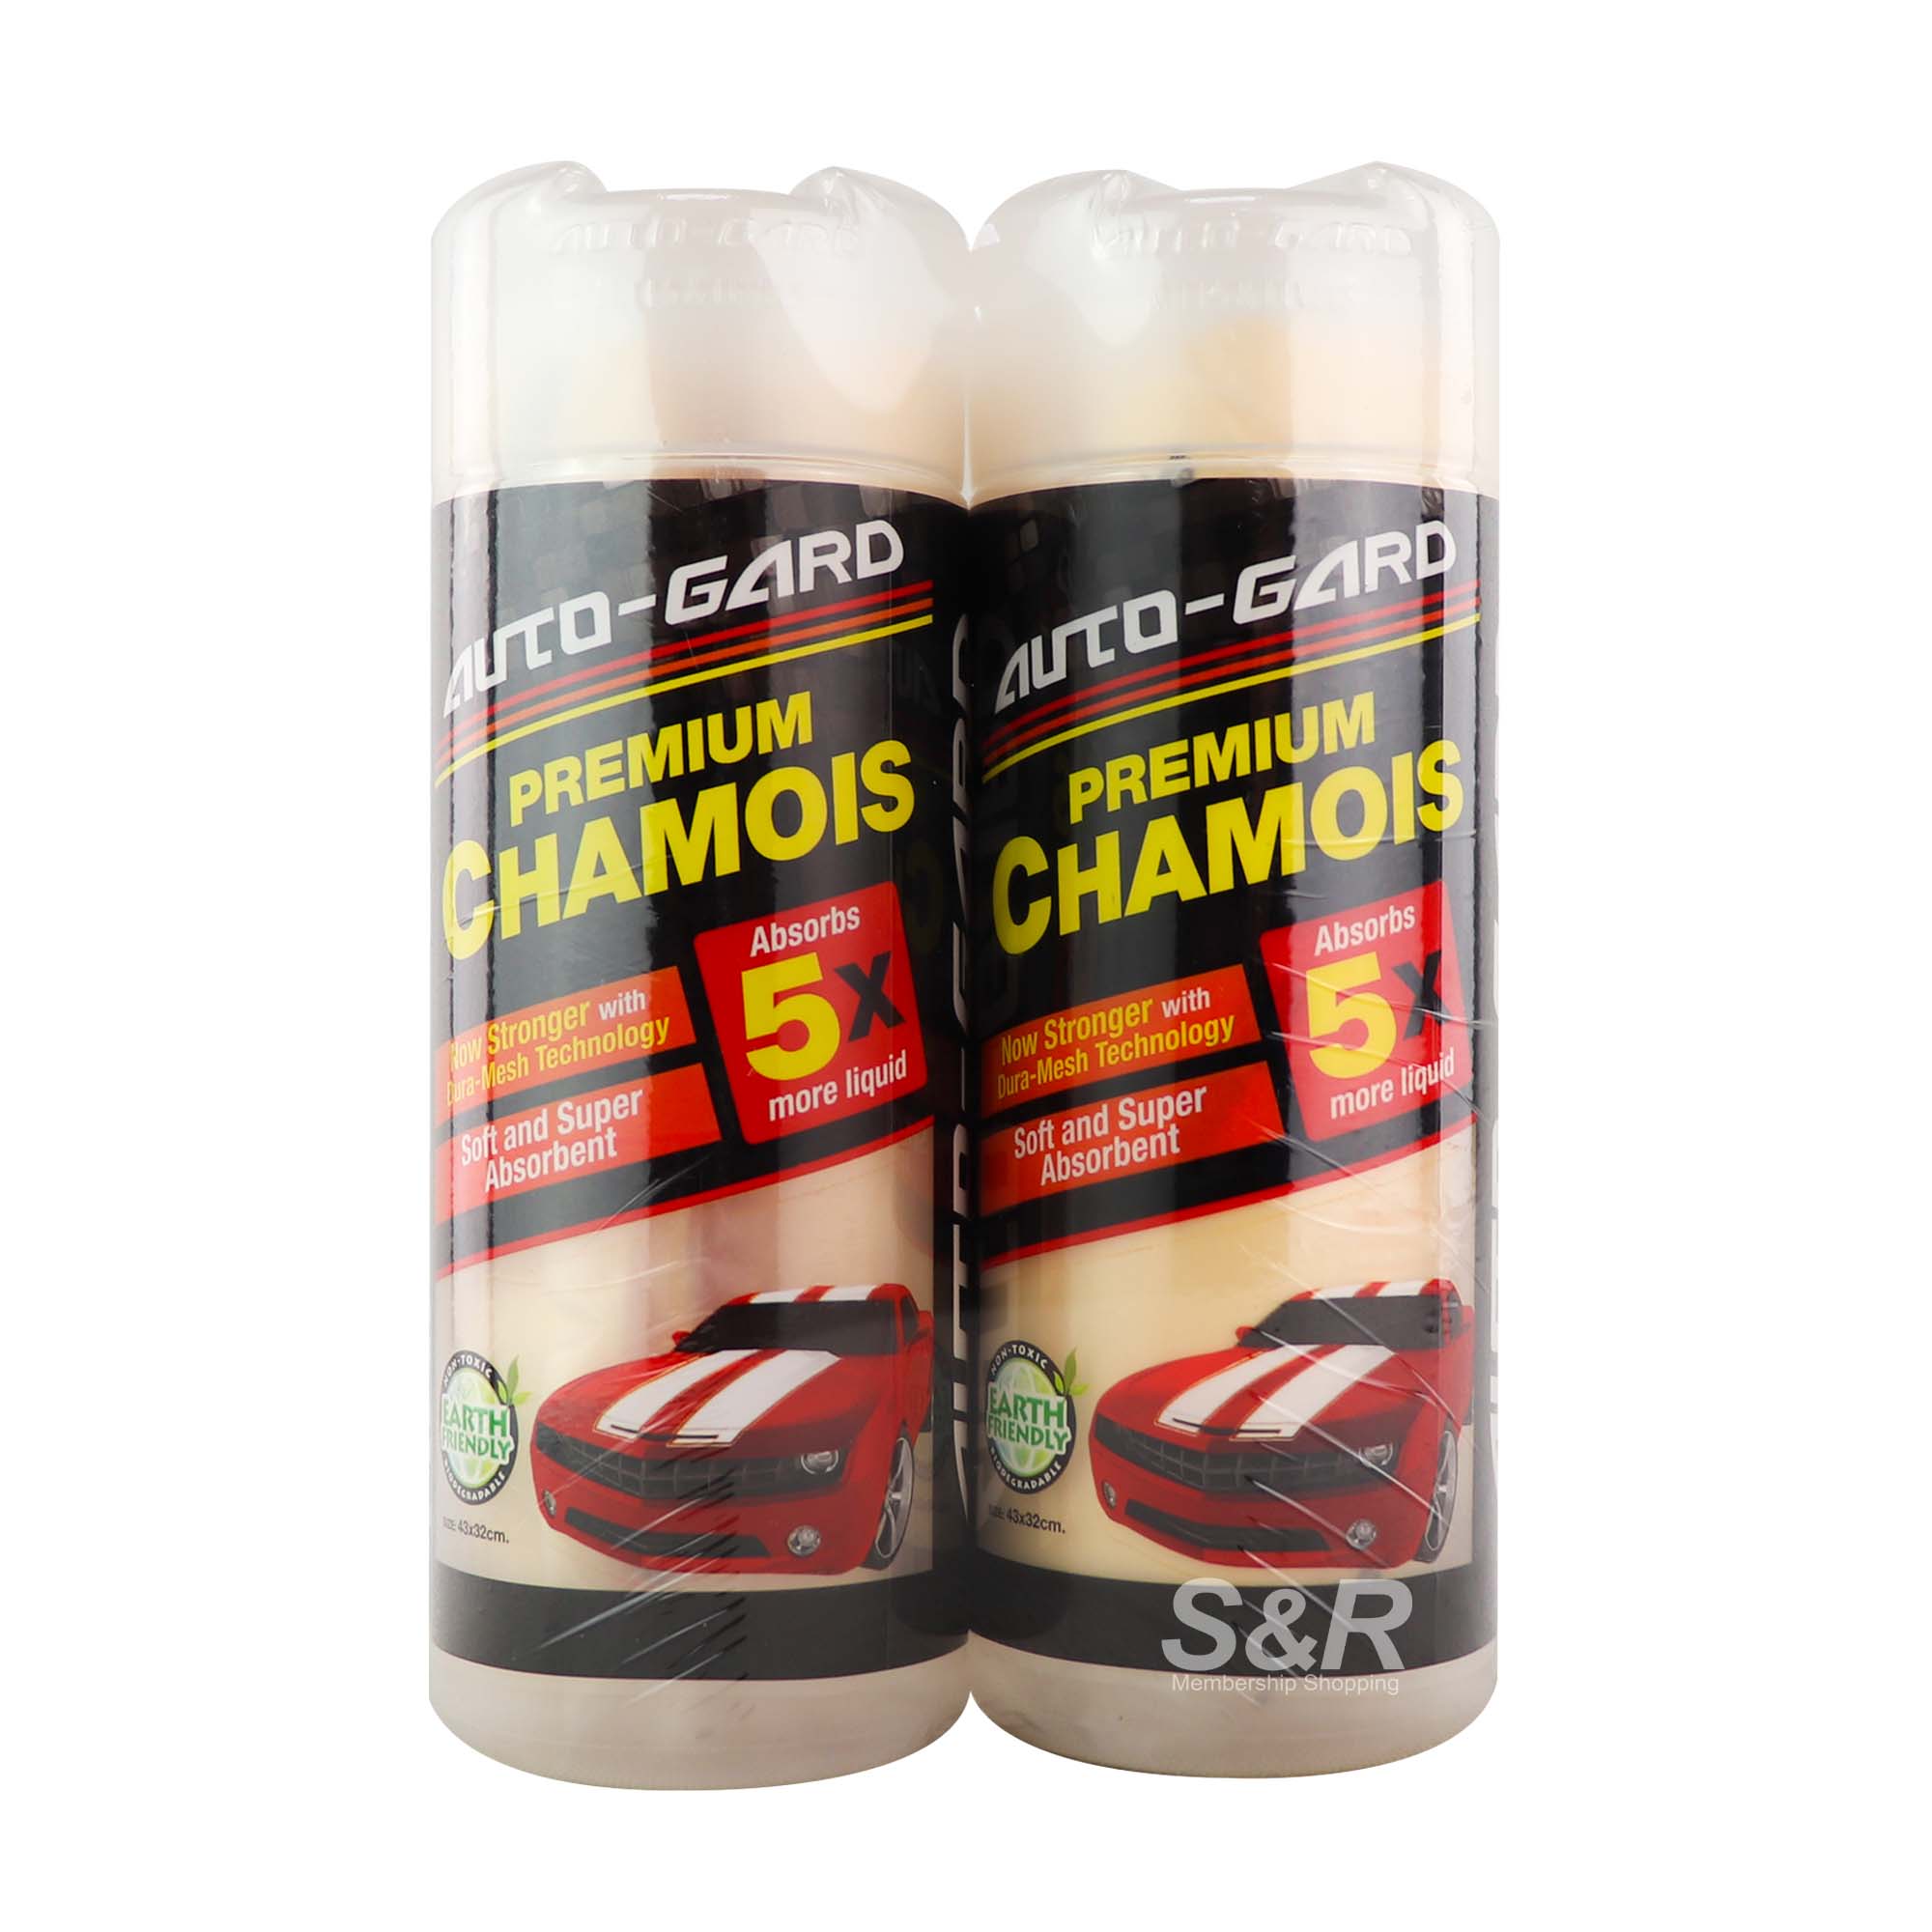 Auto-Gard Premium Chamois 2pcs